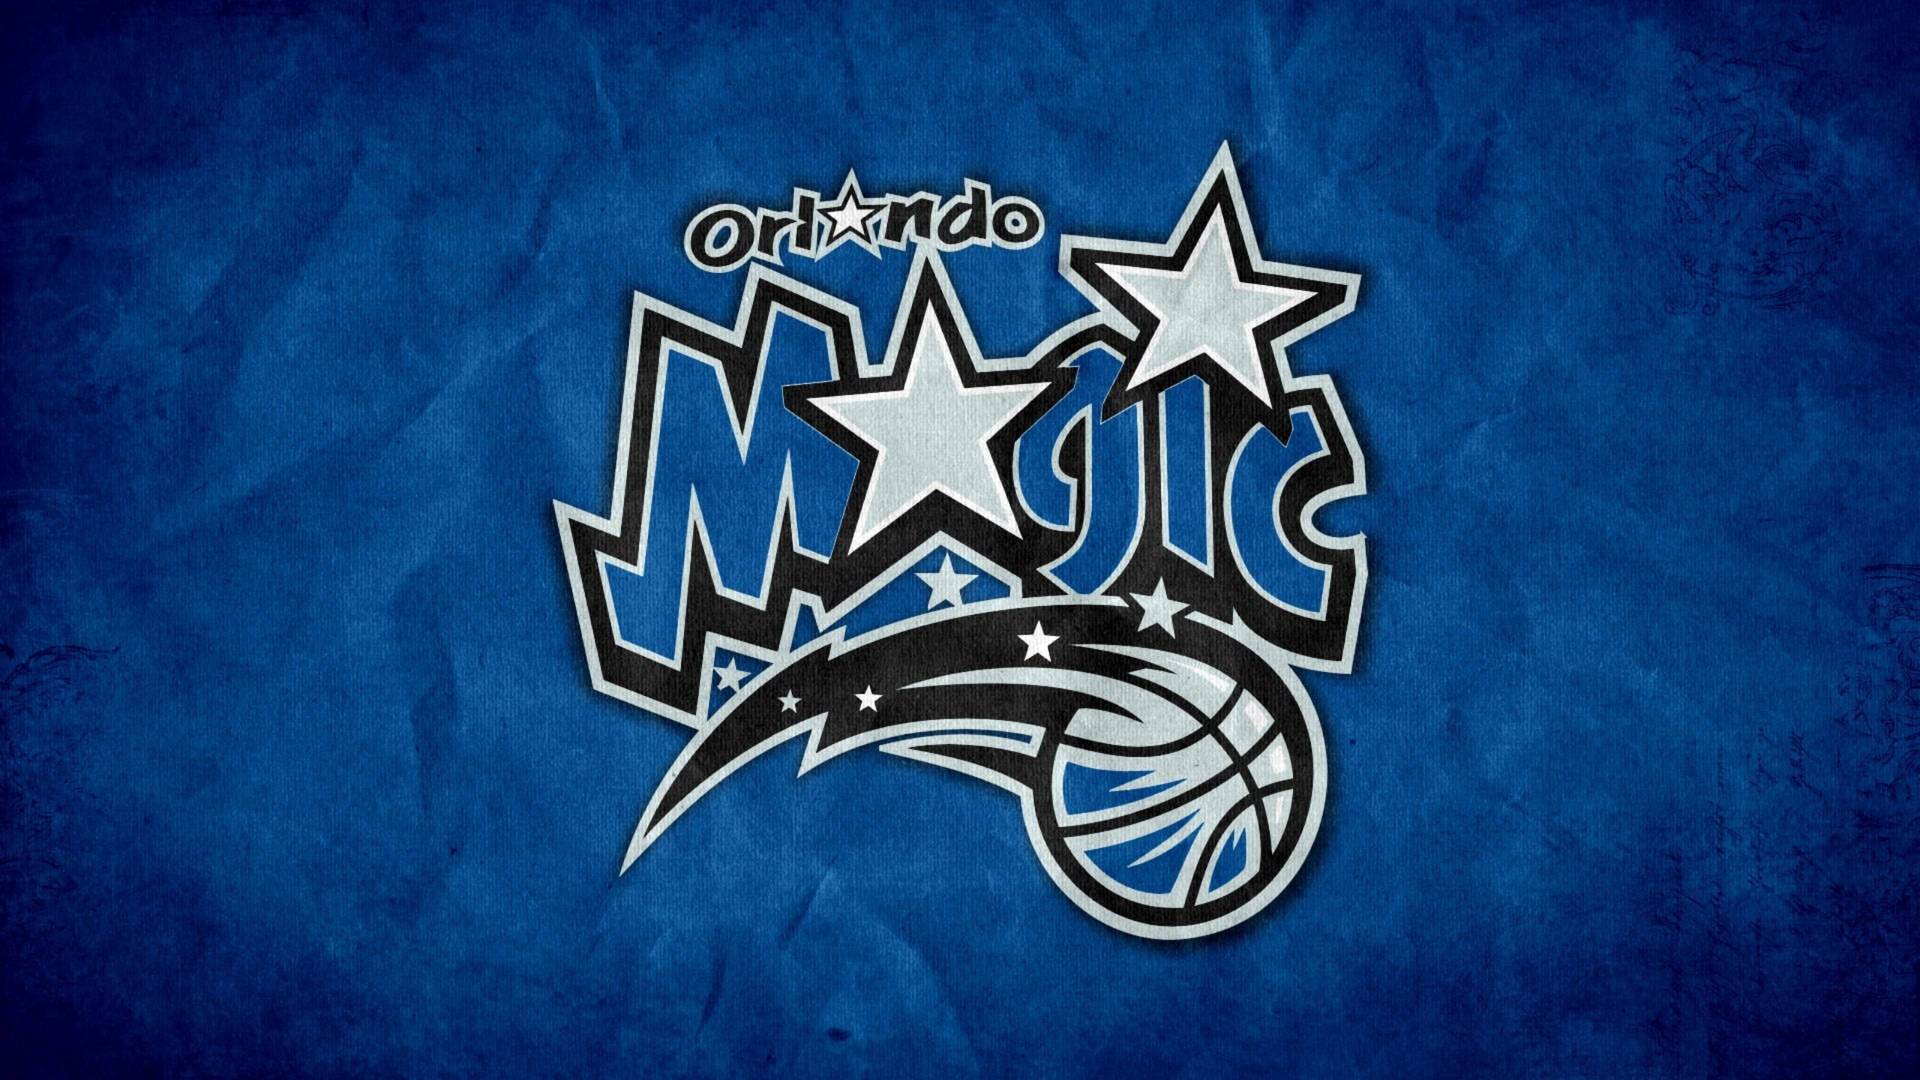 Logode La Franquicia De Orlando Magic En Azul Fondo de pantalla